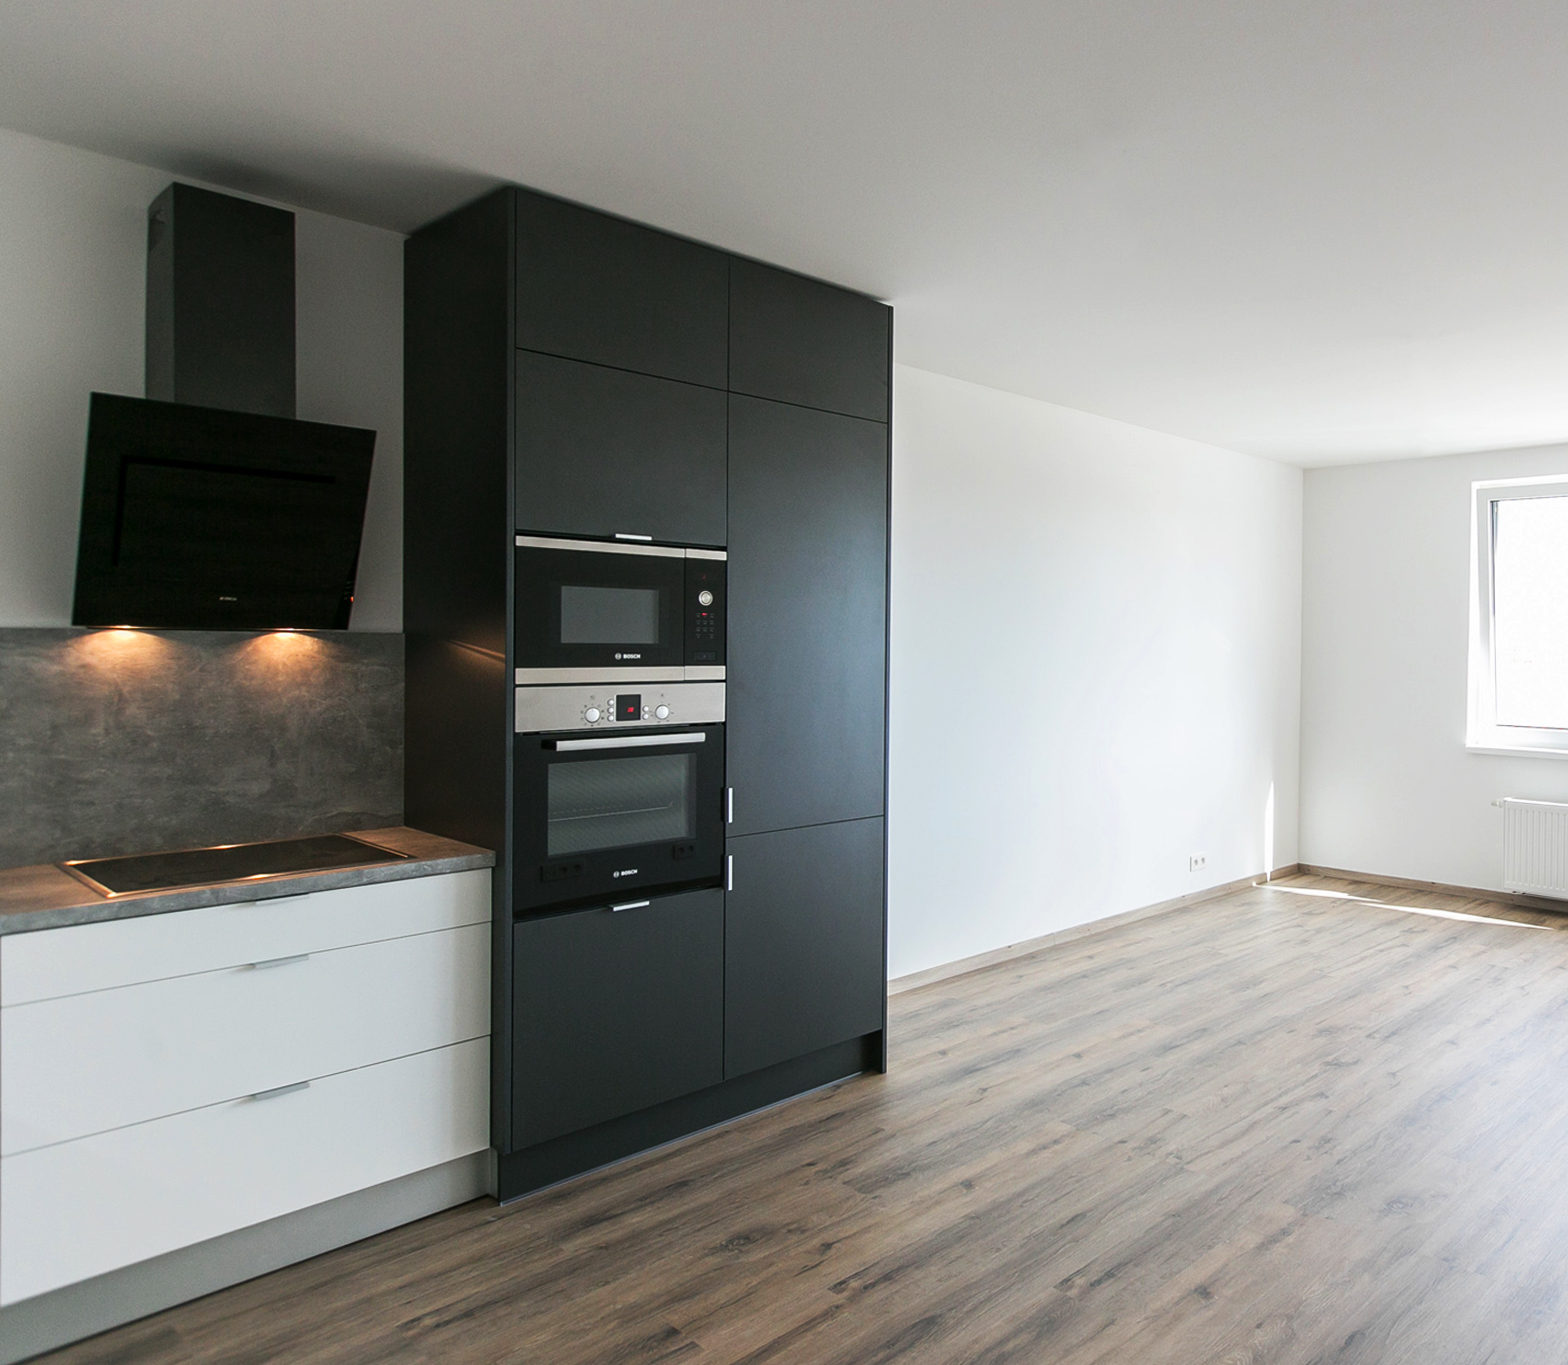 Malé Krasňany BD5 - realizácia kuchyne - 2-izbový byt